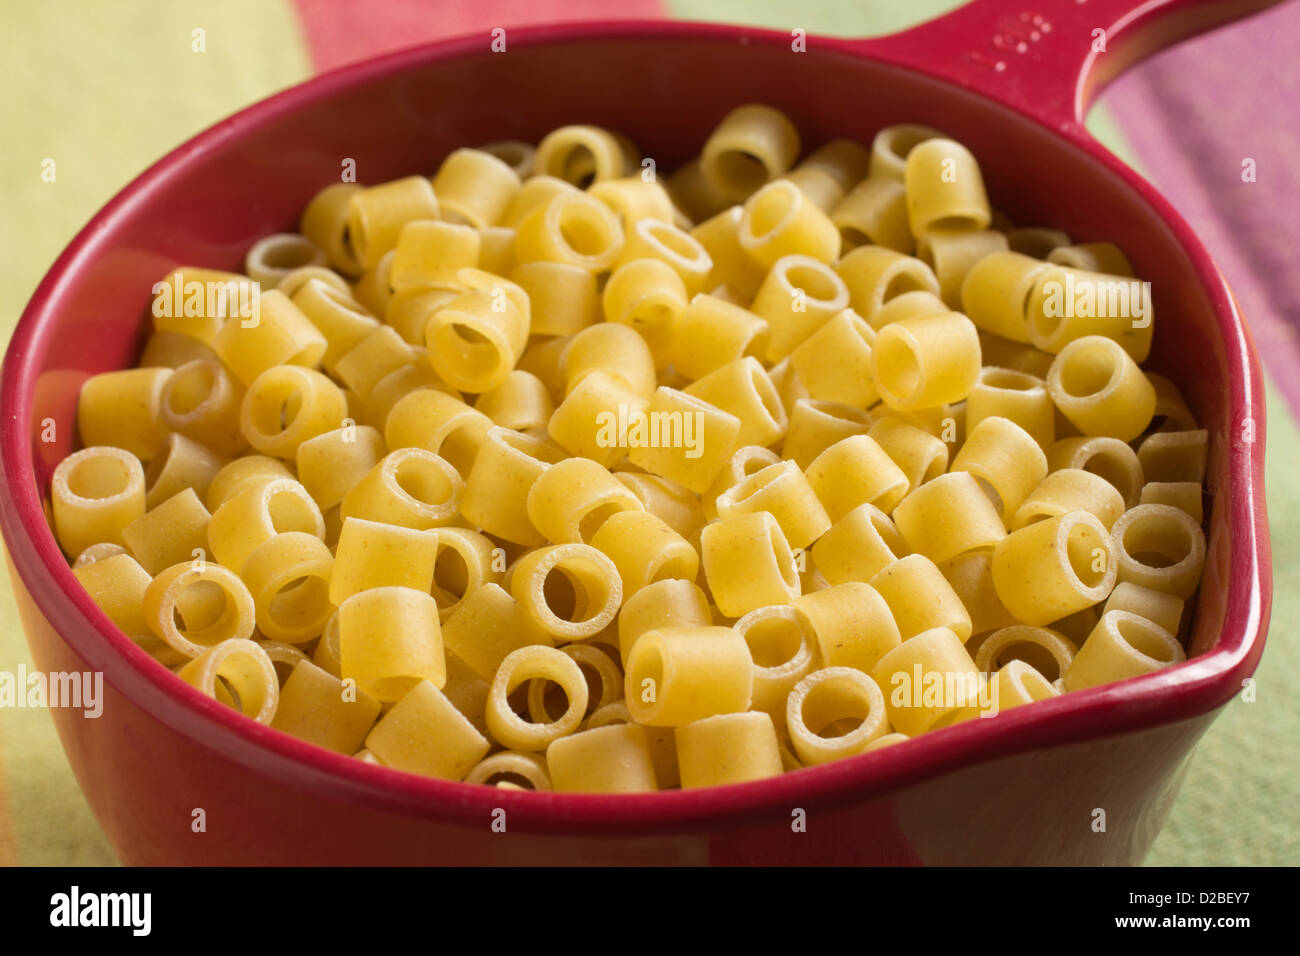 Ditalini - A dry pasta shape Stock Photo